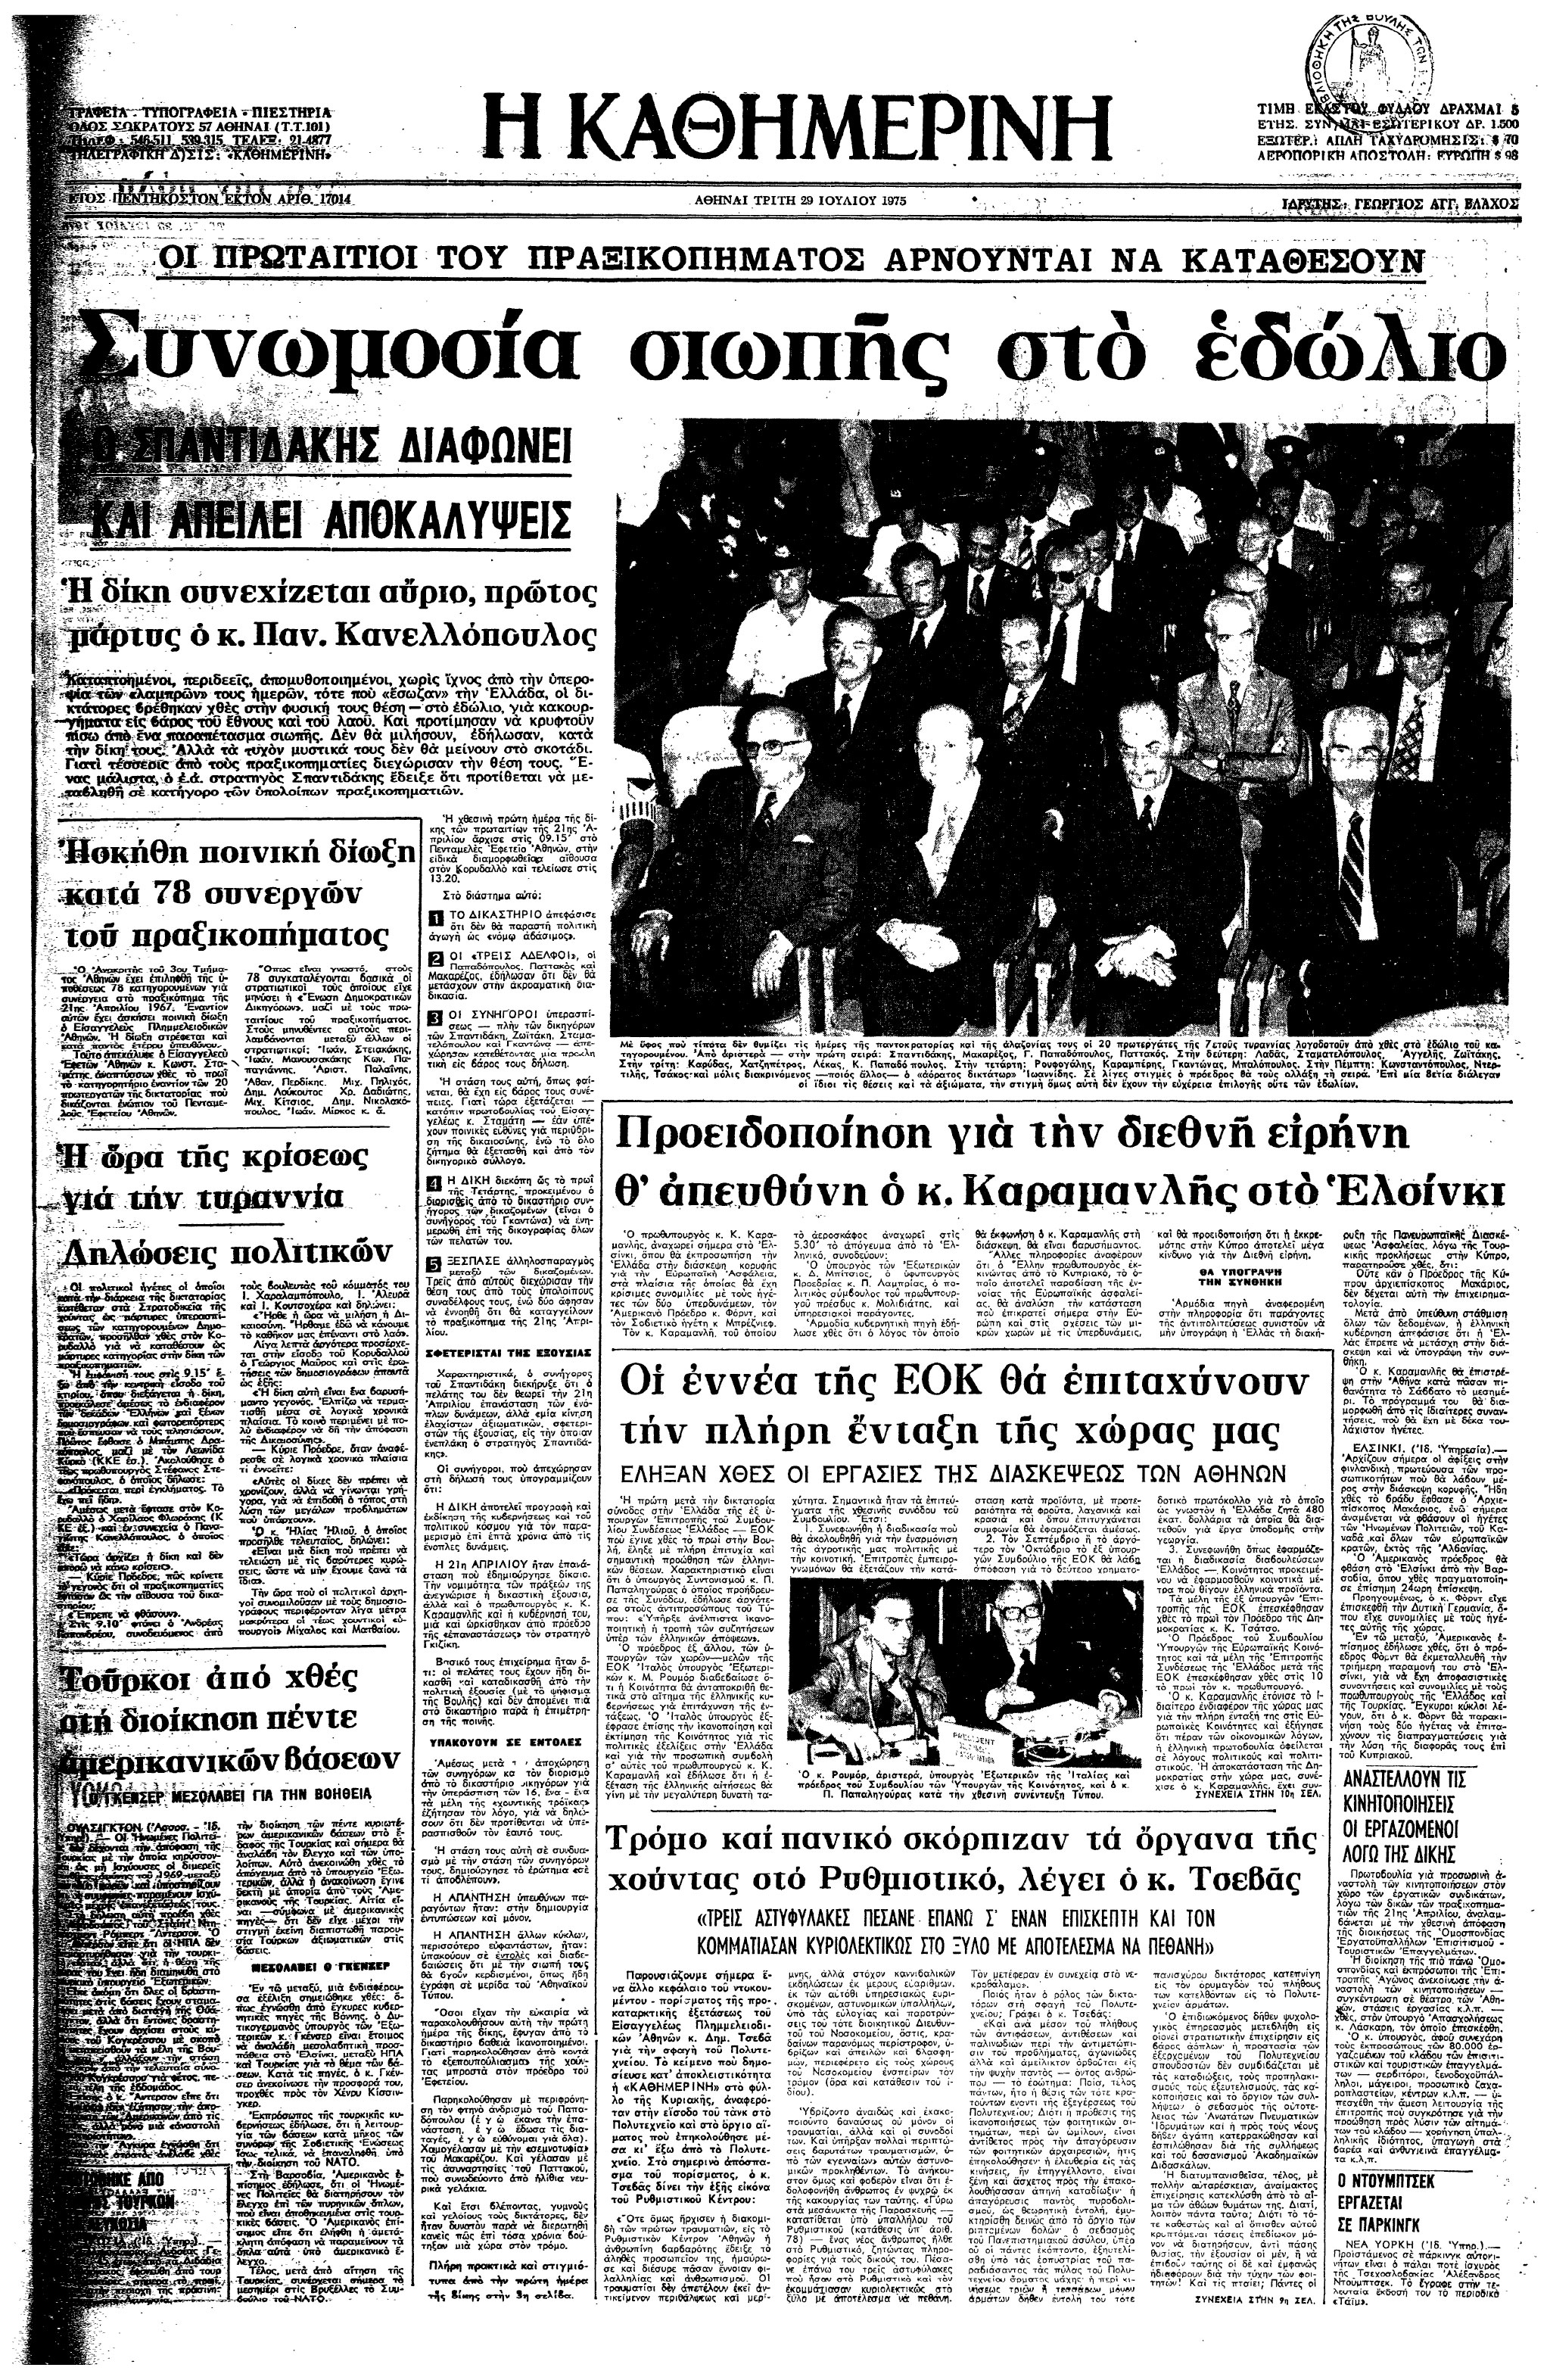 Σαν σήμερα: 28 Ιουλίου 1975 – Ξεκινά η δίκη των πρωταιτίων της χούντας-1